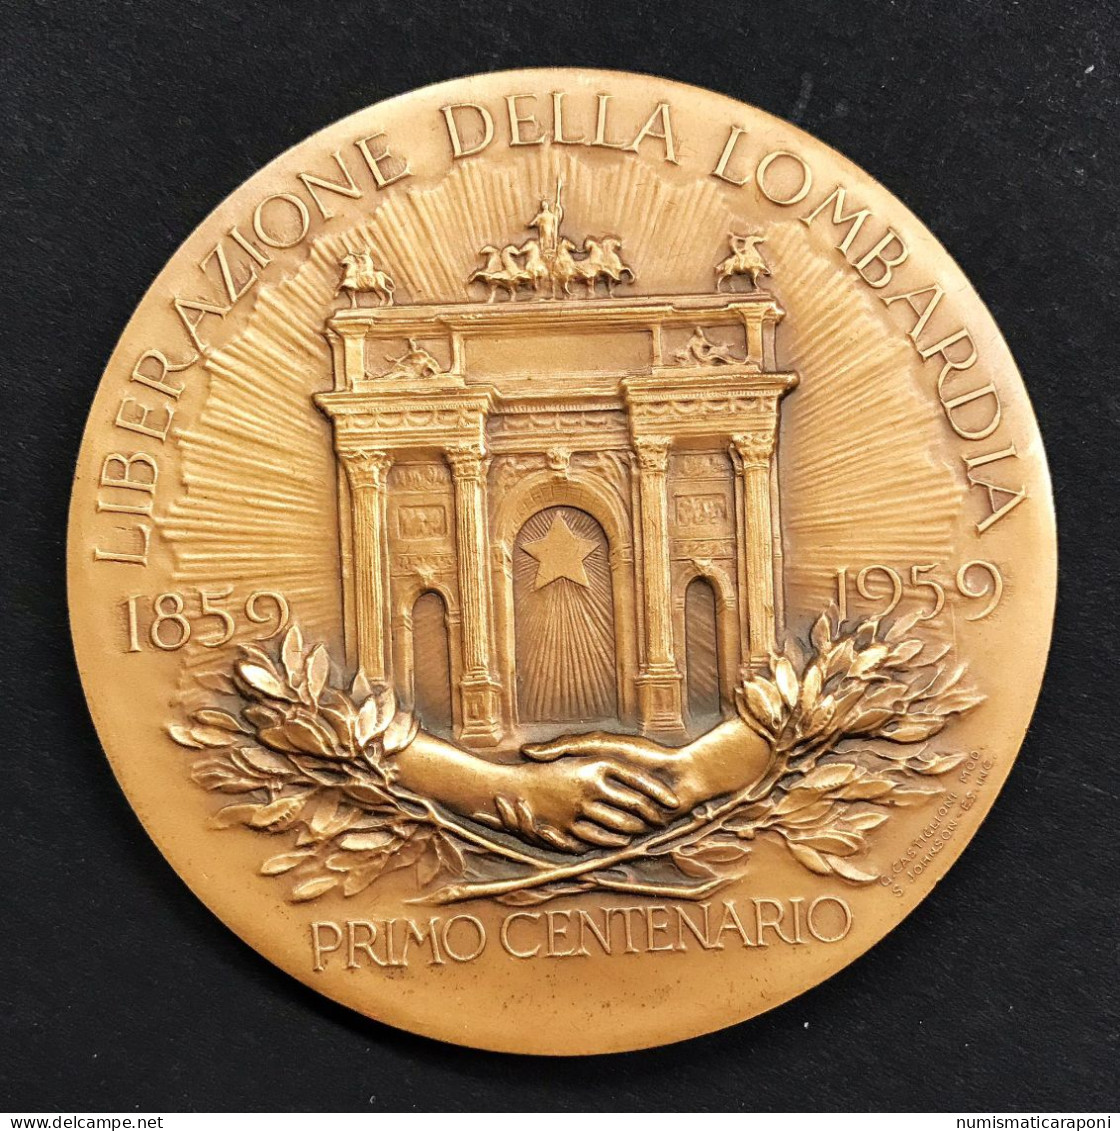 Medaglia Centenario Liberazione Della Lombardia 1859-1959 Johnson Opus Castiglioni - Firma's